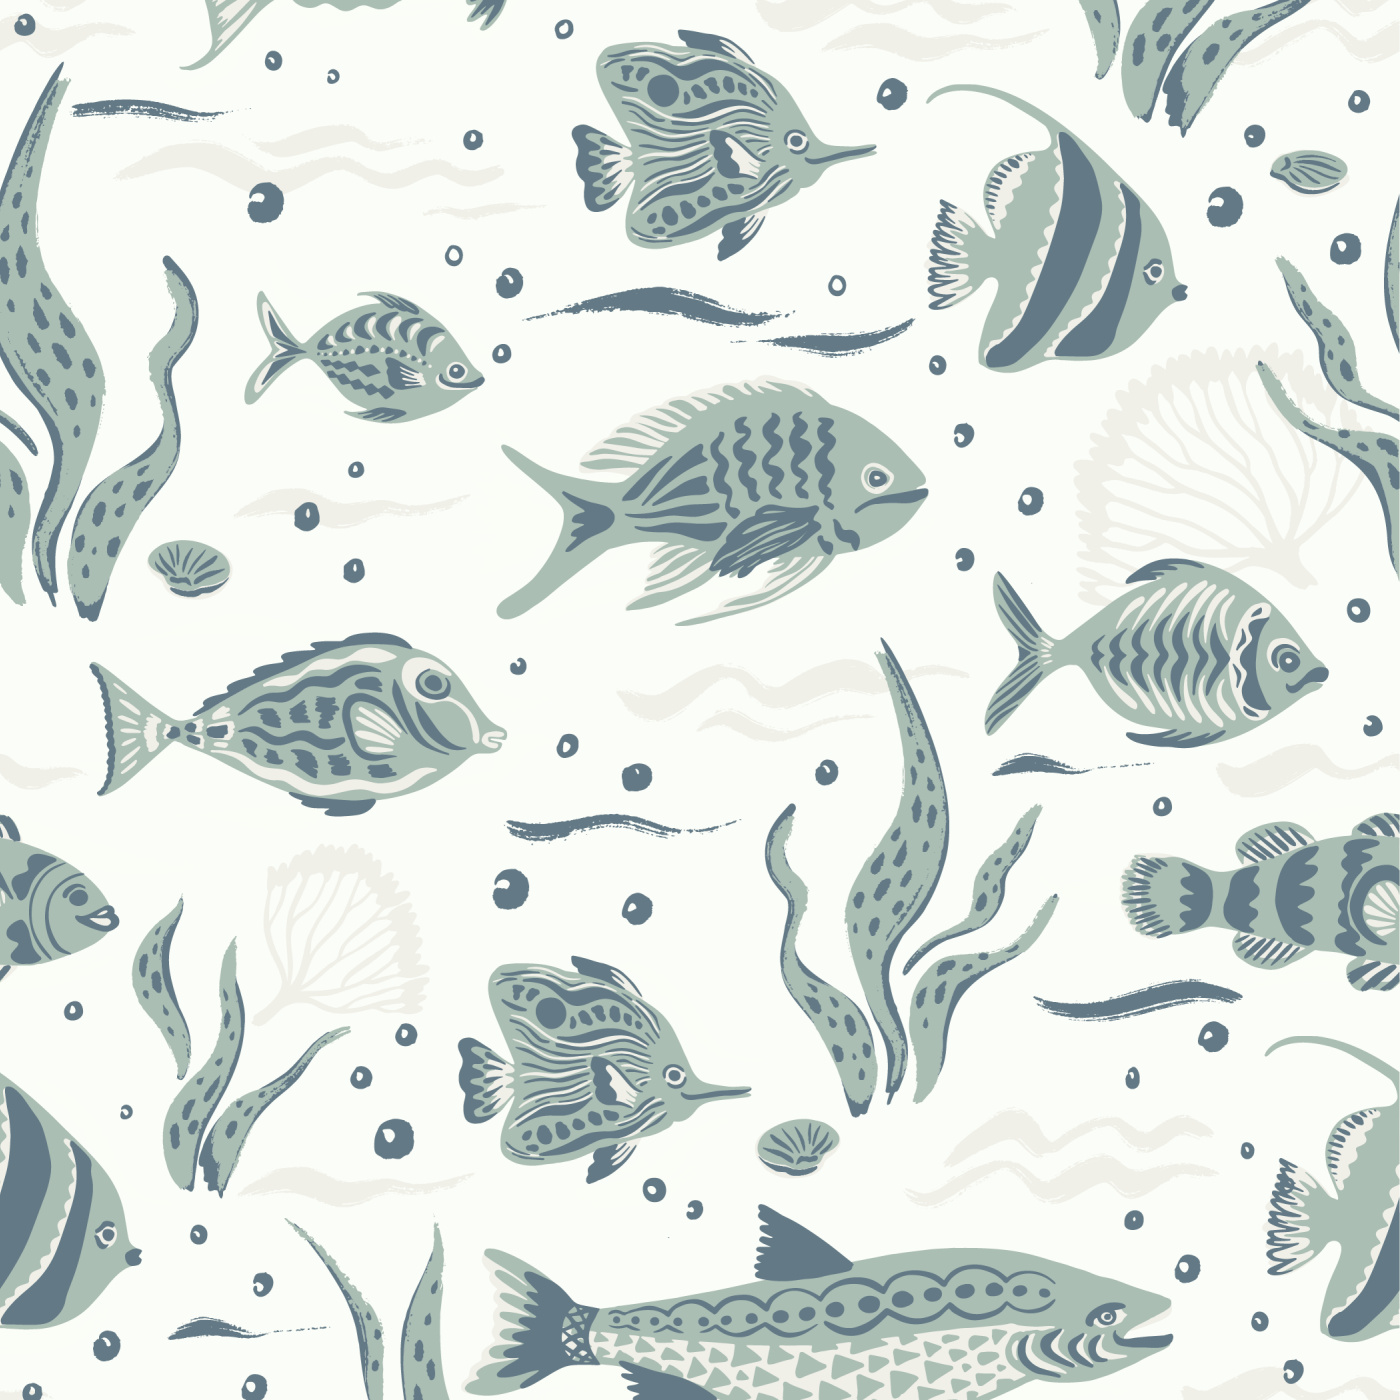 Fun Fish Wallpaper